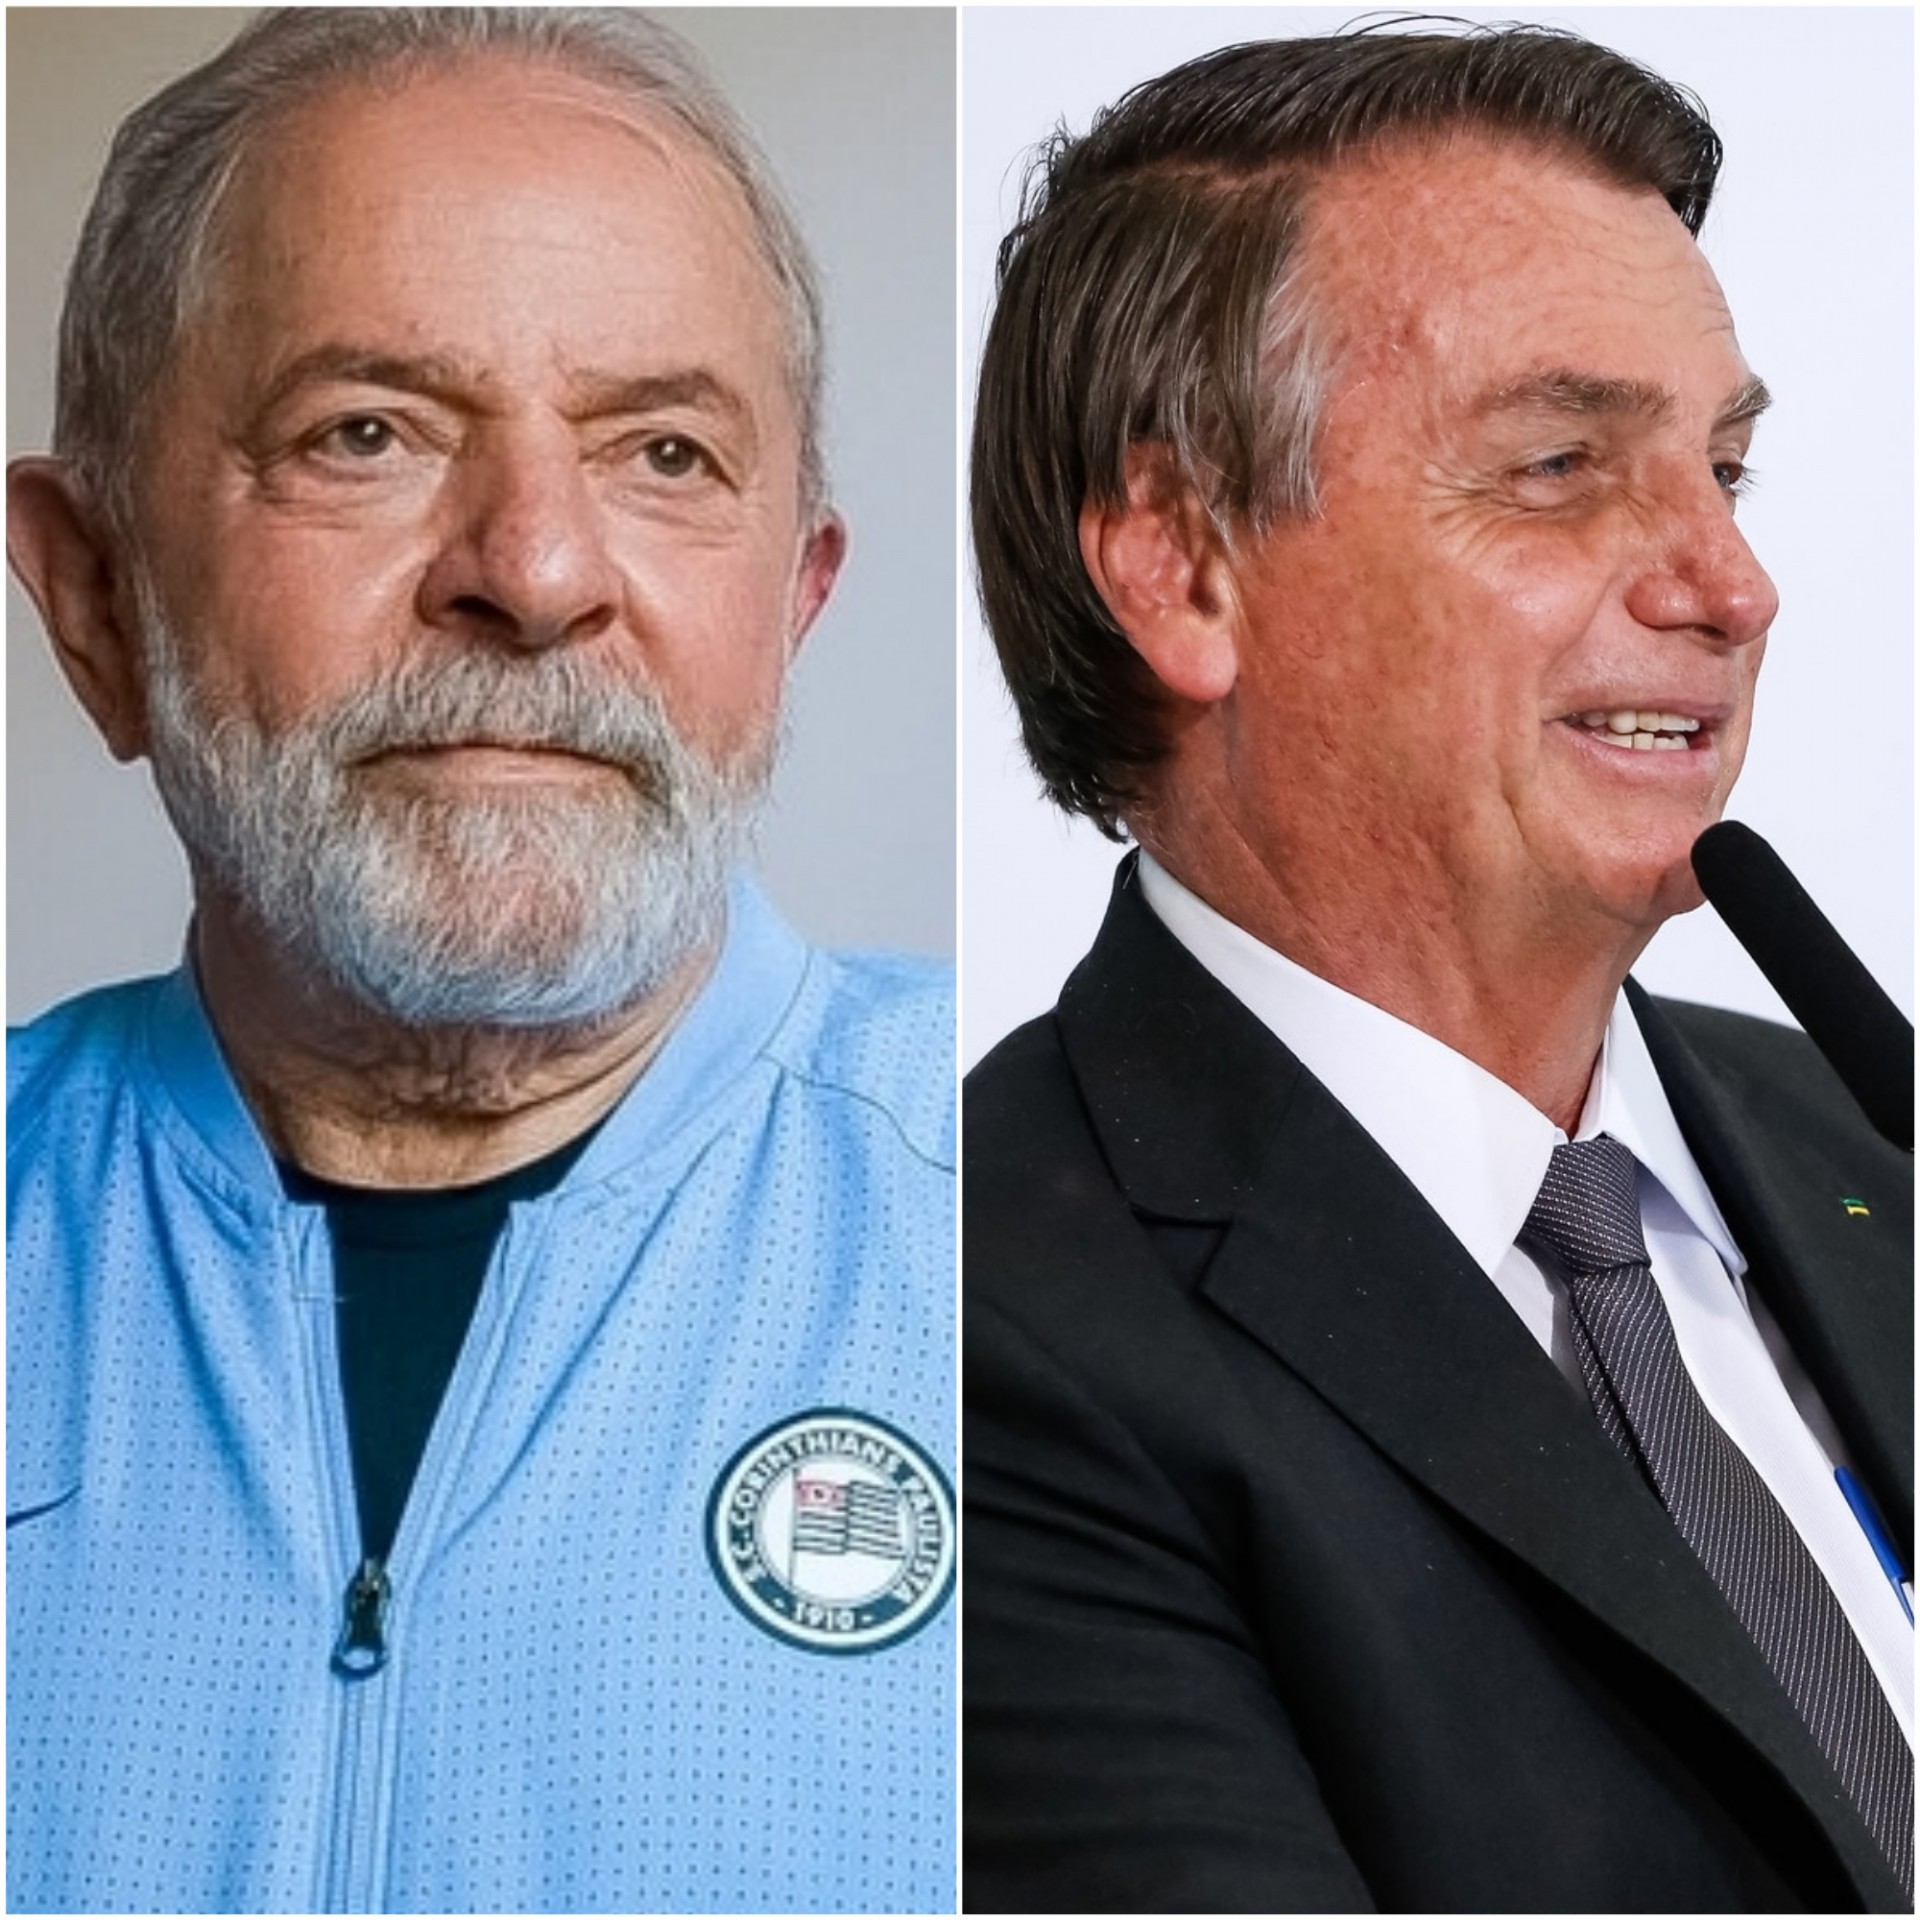 Bolsonaro e Lula criticam possibilidade de terceira via para disputa presidencial em 2022(Foto: Reprodução: Lula (PT.org)/ Bolsonaro (Foto: Alan Santos/PR))